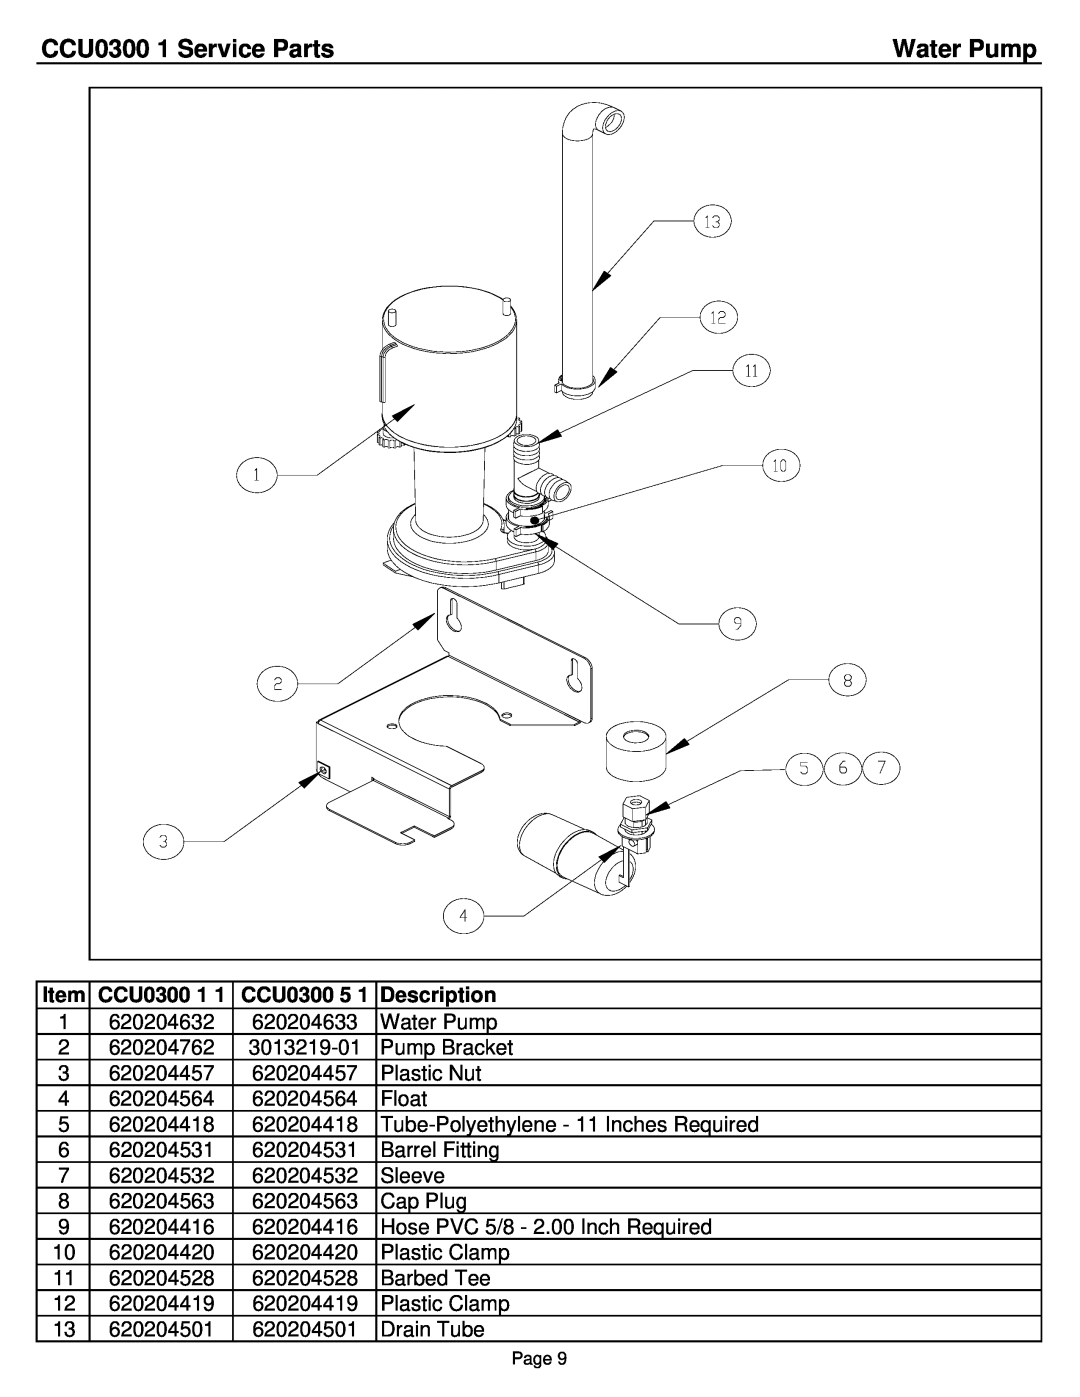 Cornelius manual Water Pump, CCU0300 1 Service Parts, Description 